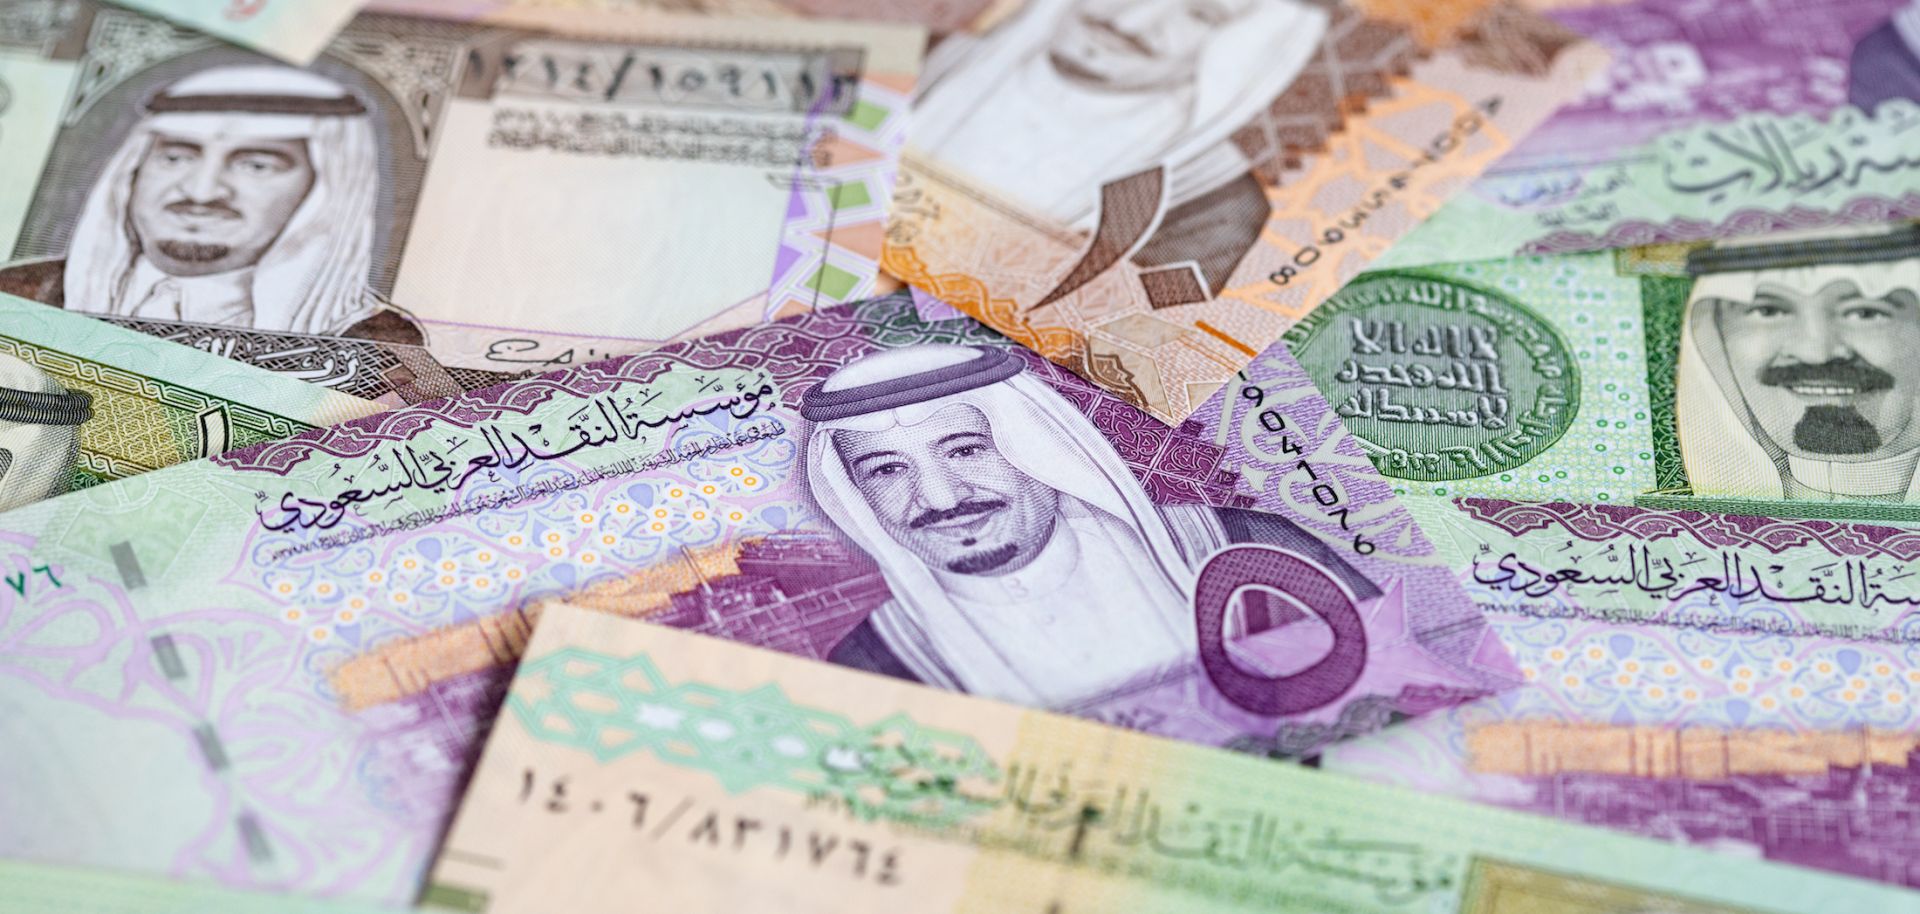 أسعار بيع الريال السعودي اليوم الأربعاء في مصر